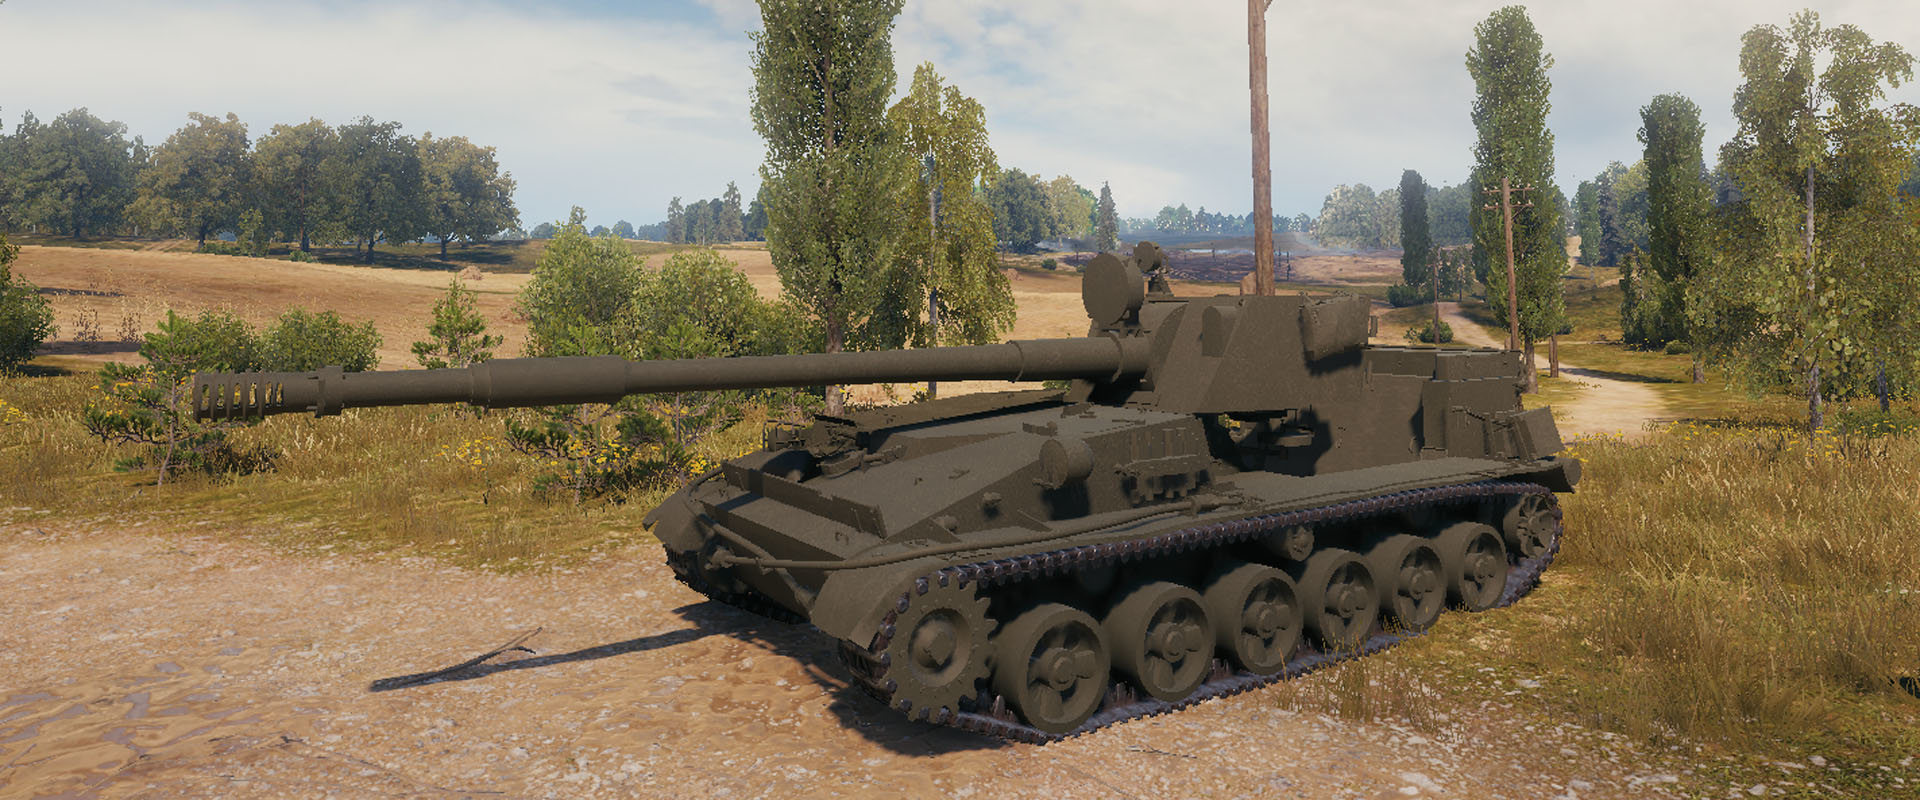 Extra magas sebzésű új szovjet prémium tankvadász!